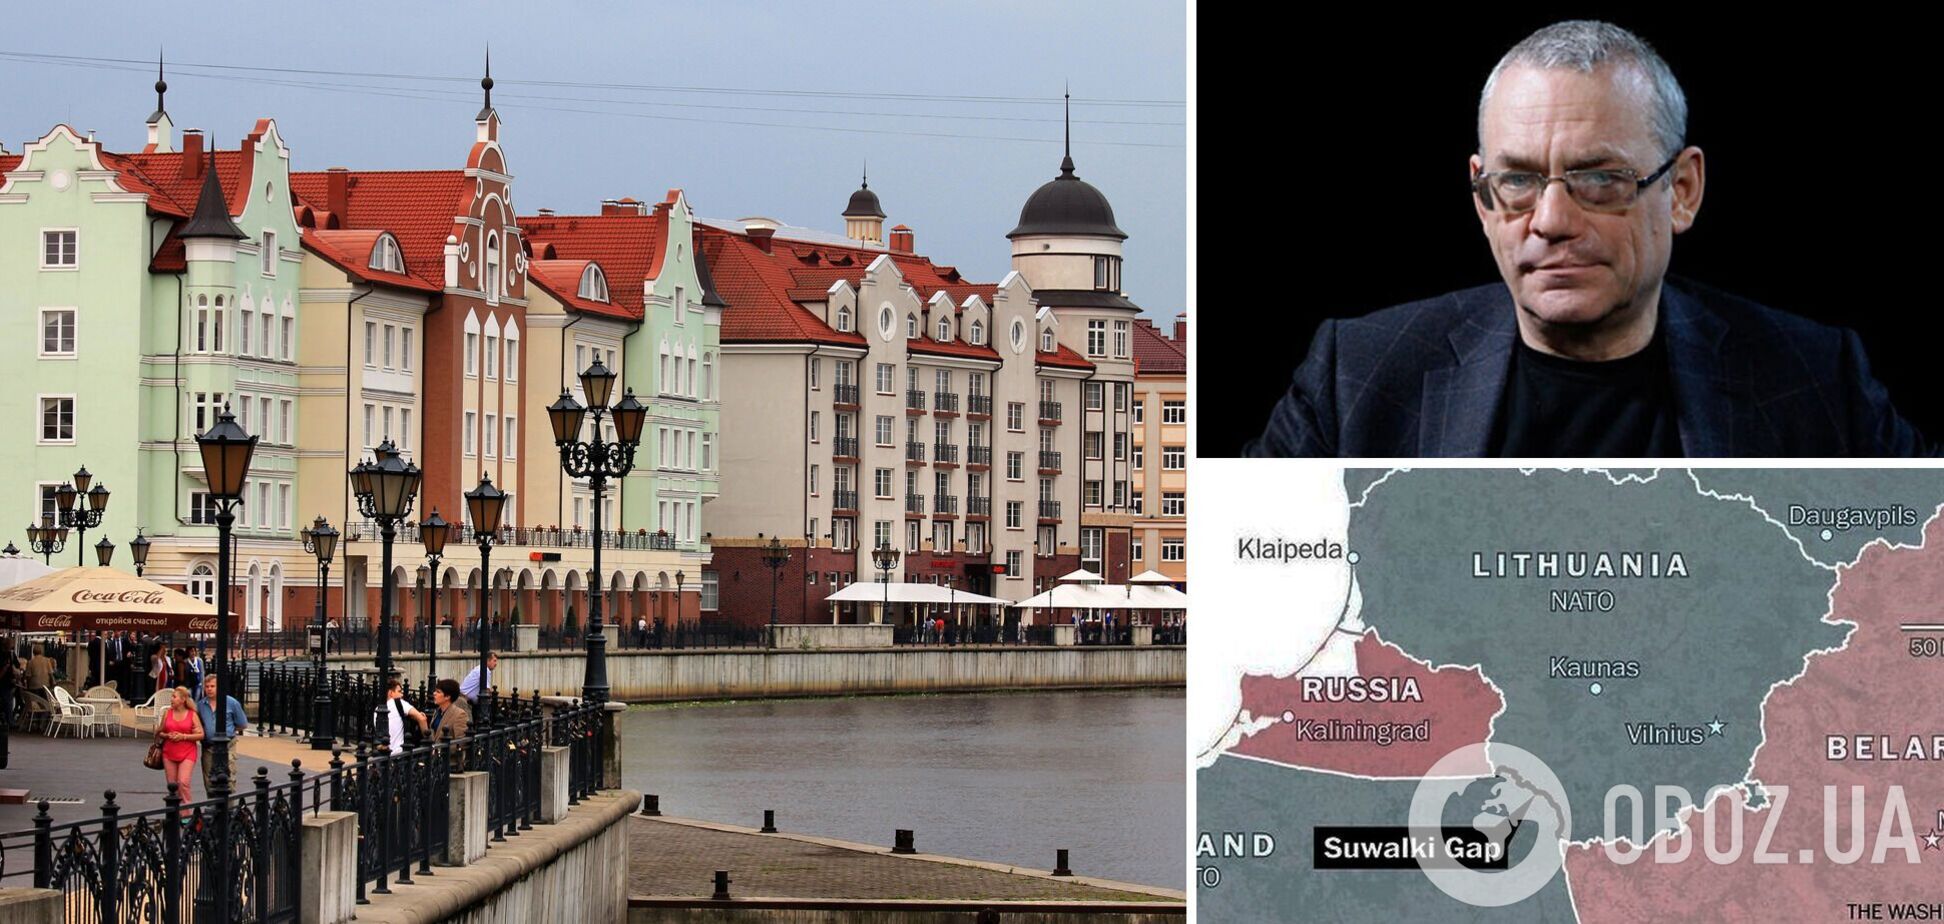 Яковенко: Путин не сможет наказать Литву за 'блокаду' Калининграда, РФ может потерять этот город. Интервью